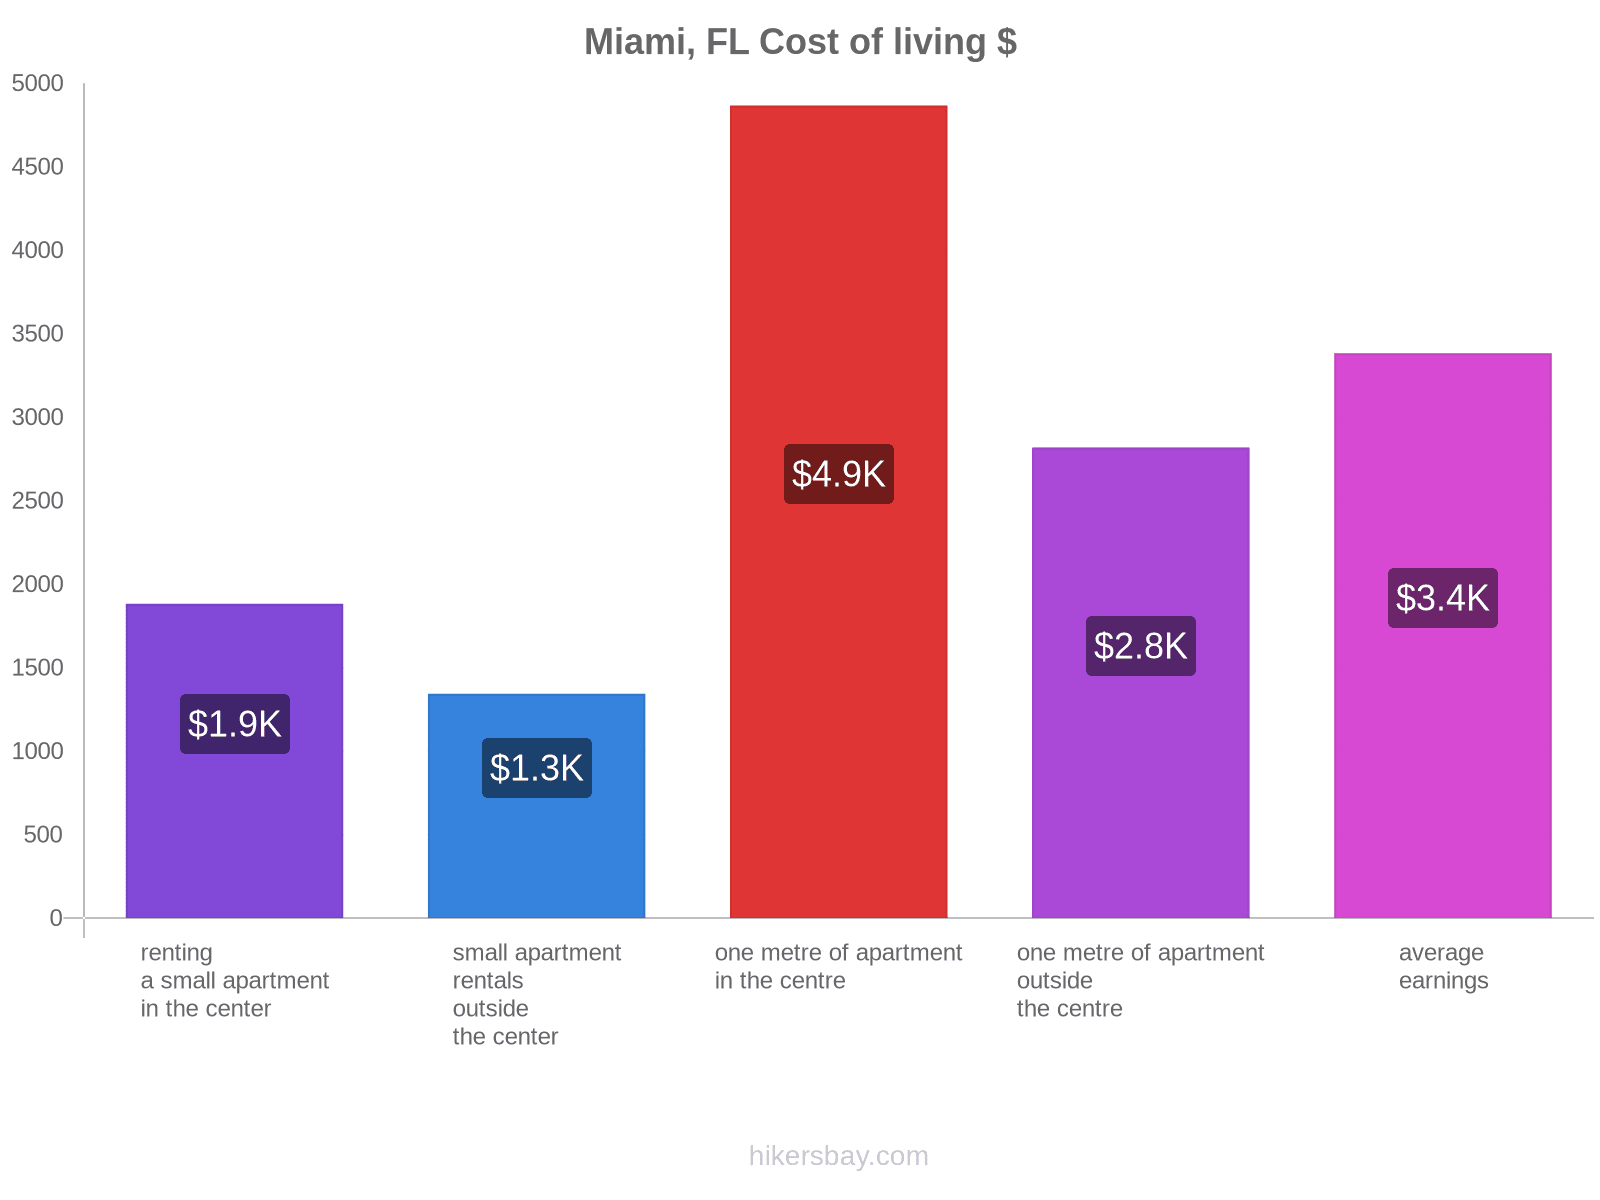 Miami, FL cost of living hikersbay.com